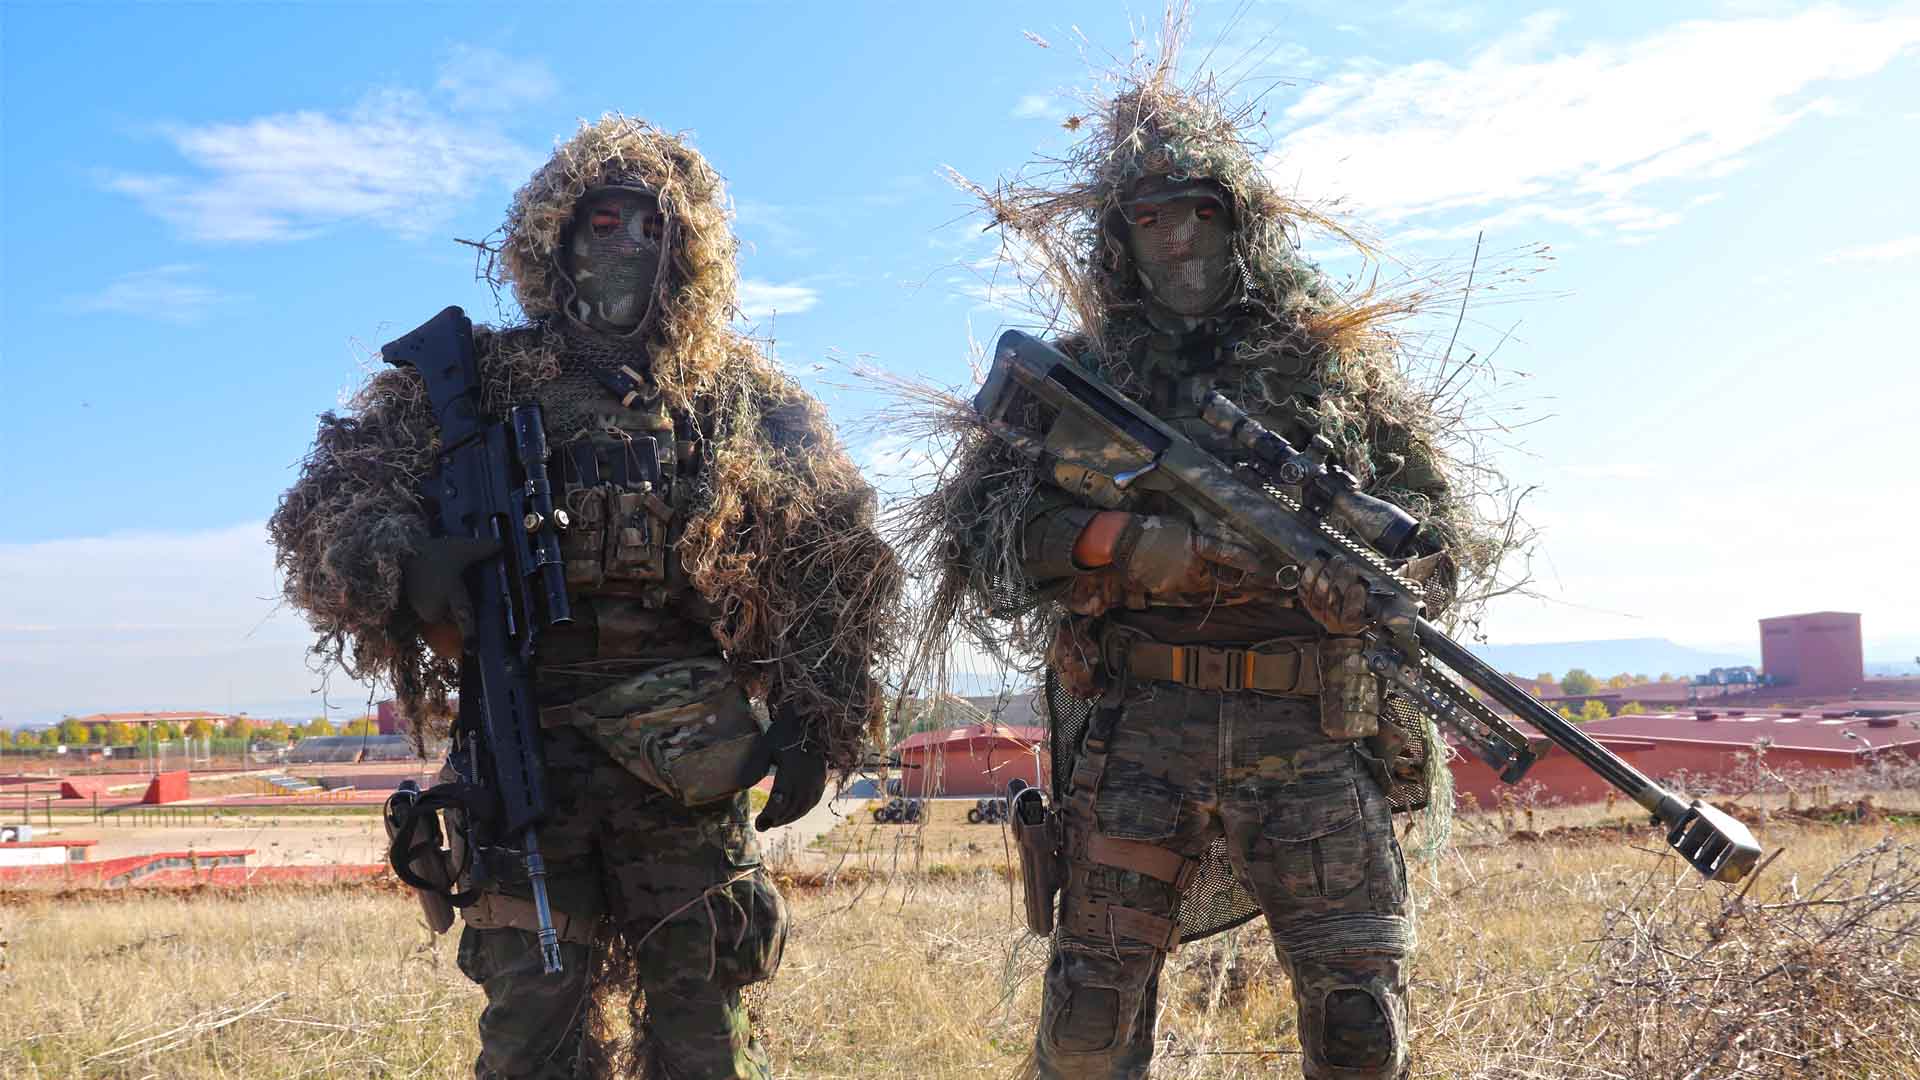 "Triunfar o morir": los tiradores de precisión de la Brigada Paracaidista nos desvelan sus secretos